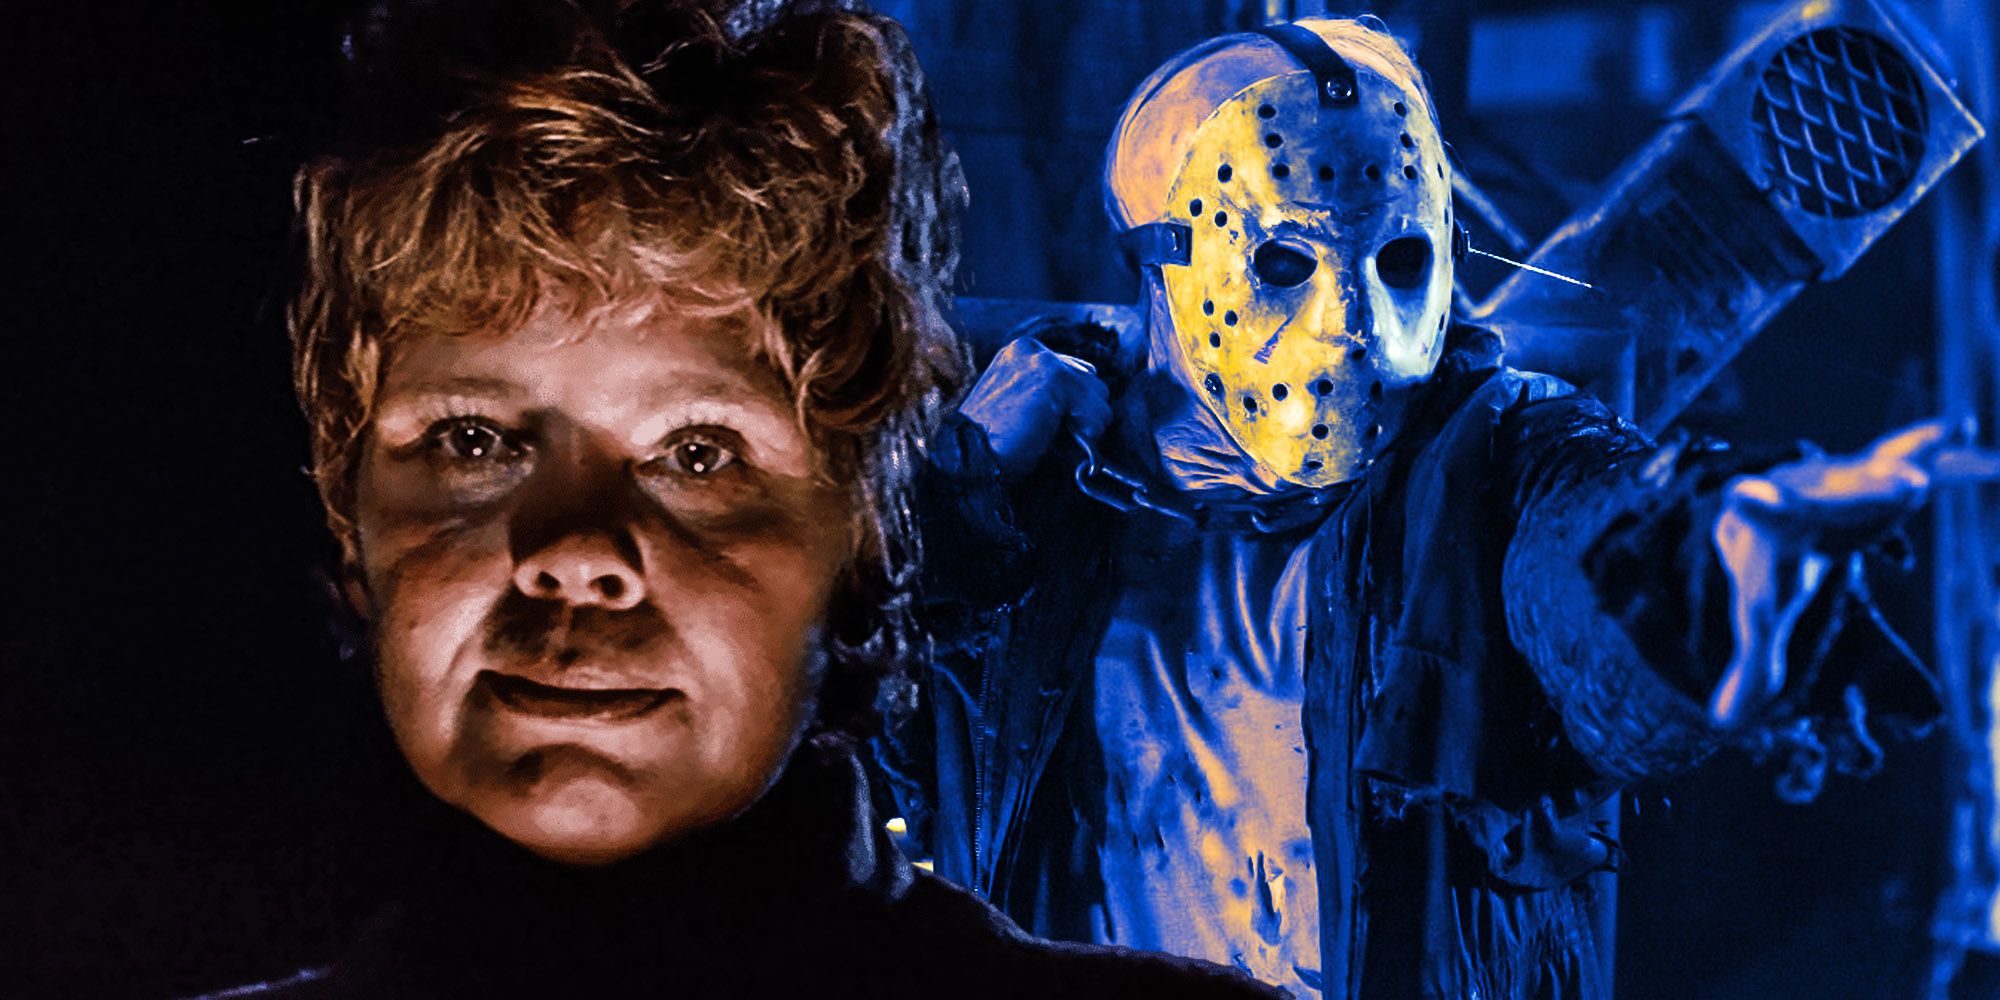 Jason nunca se suponía que fuera el villano de Friday The 13th (por qué sucedió)